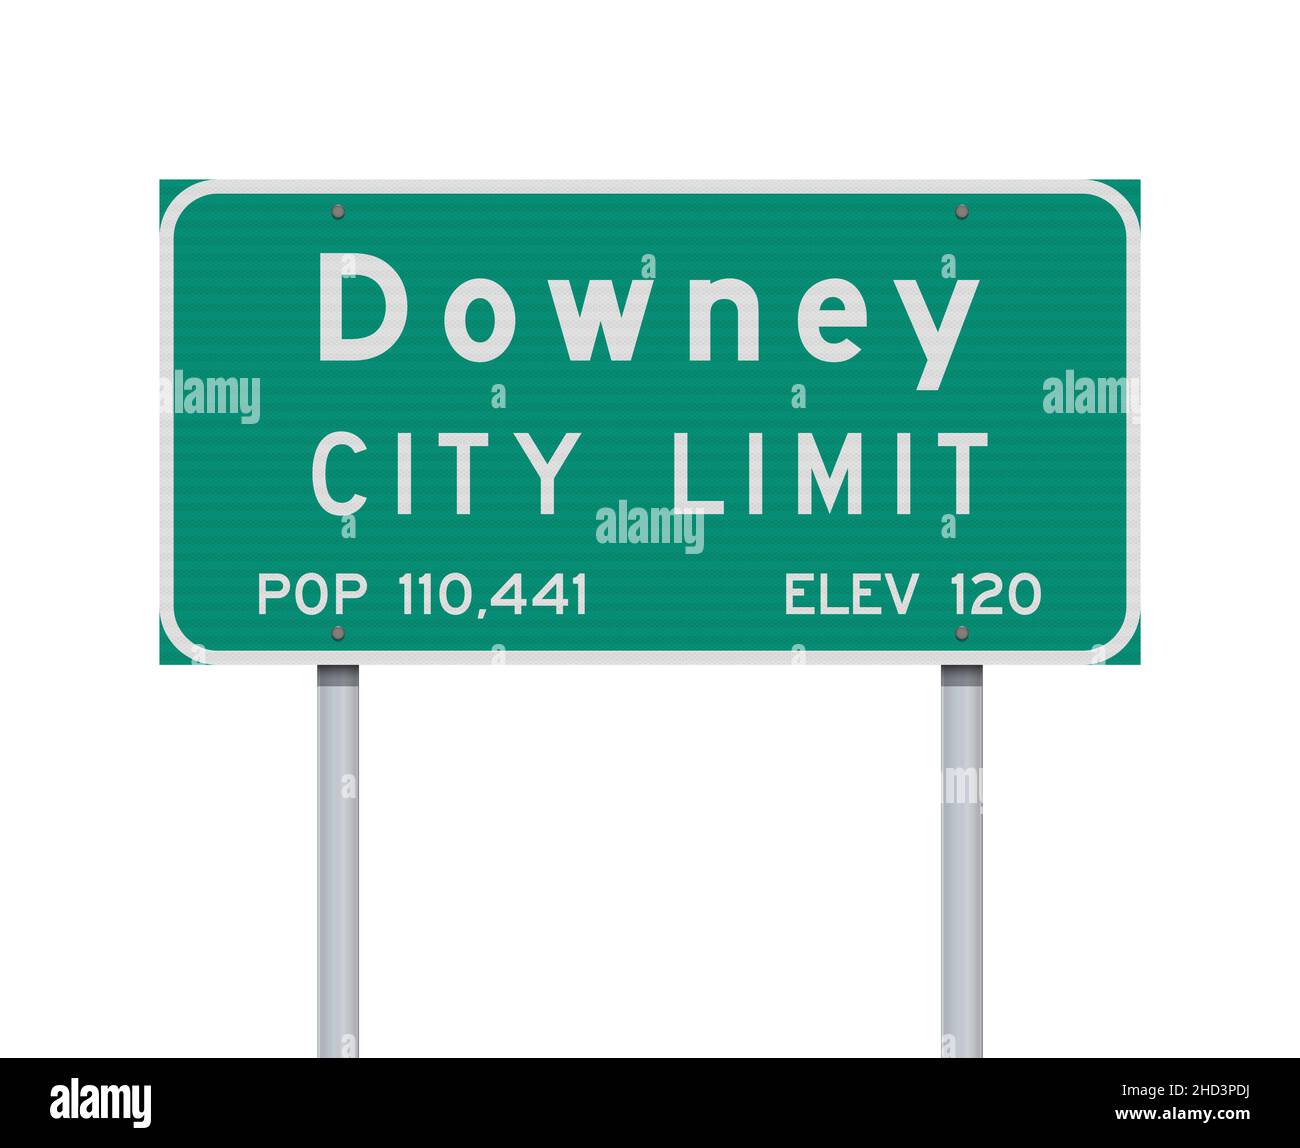 Illustration vectorielle du panneau de signalisation routière vert Downey City Limit sur des poteaux métalliques Illustration de Vecteur